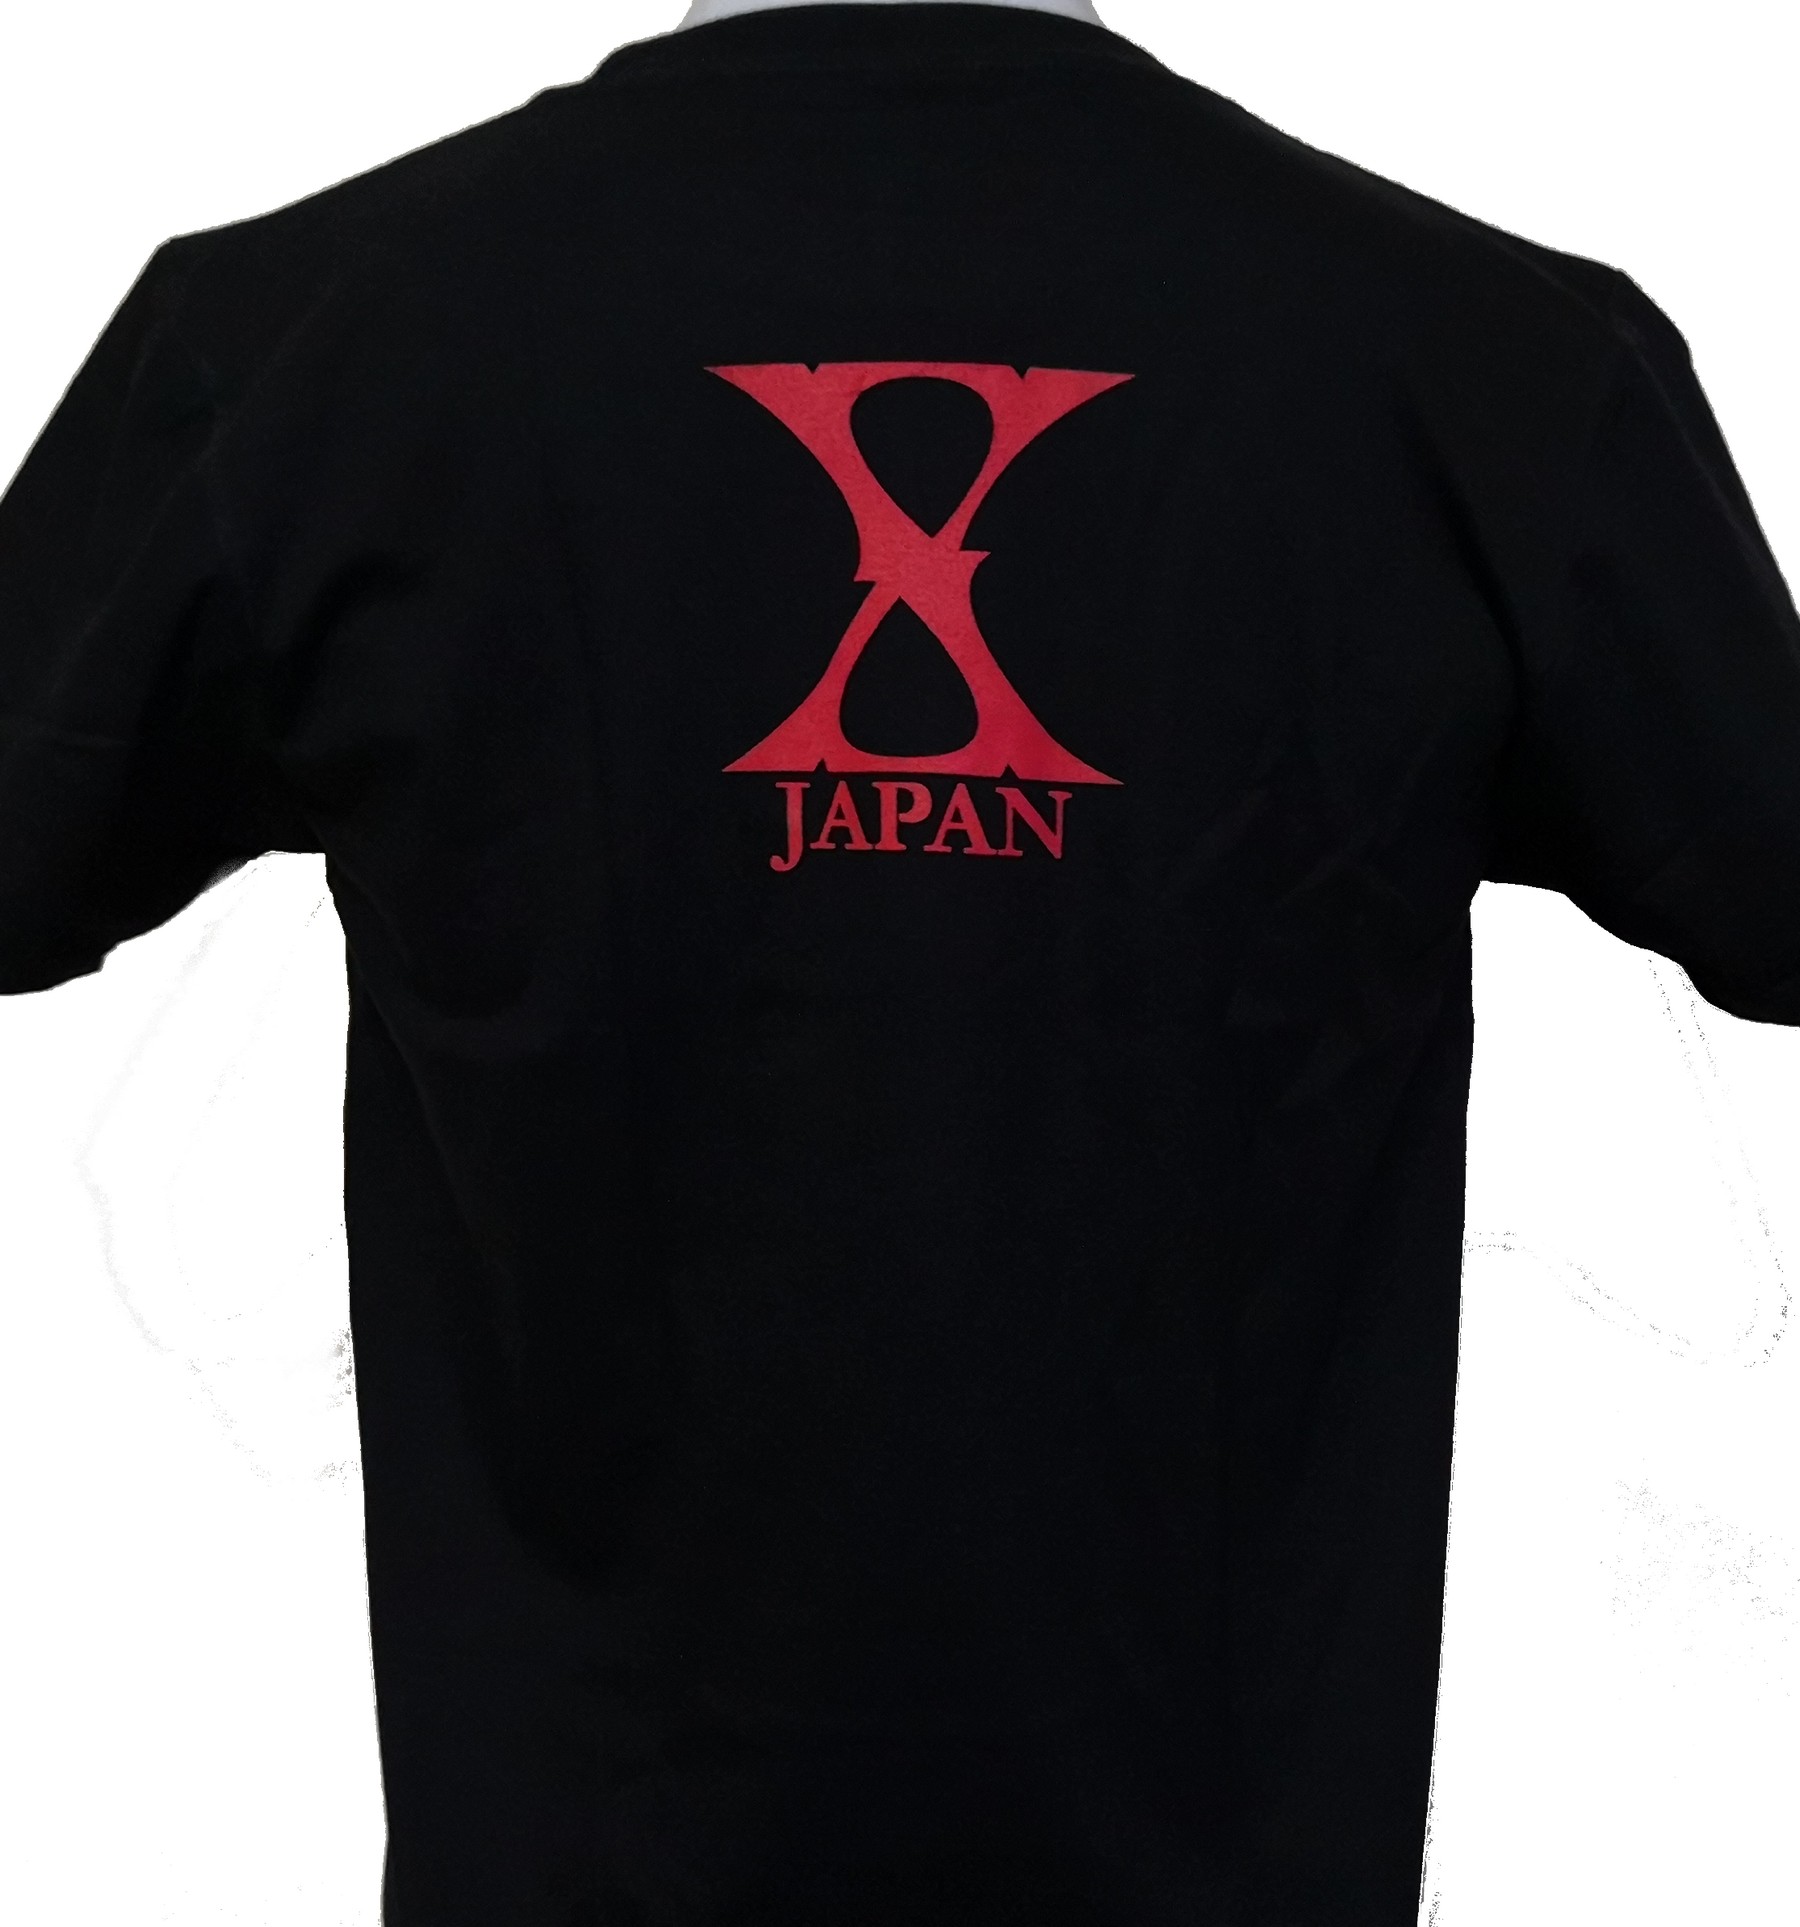 X Japan t-shirt size L